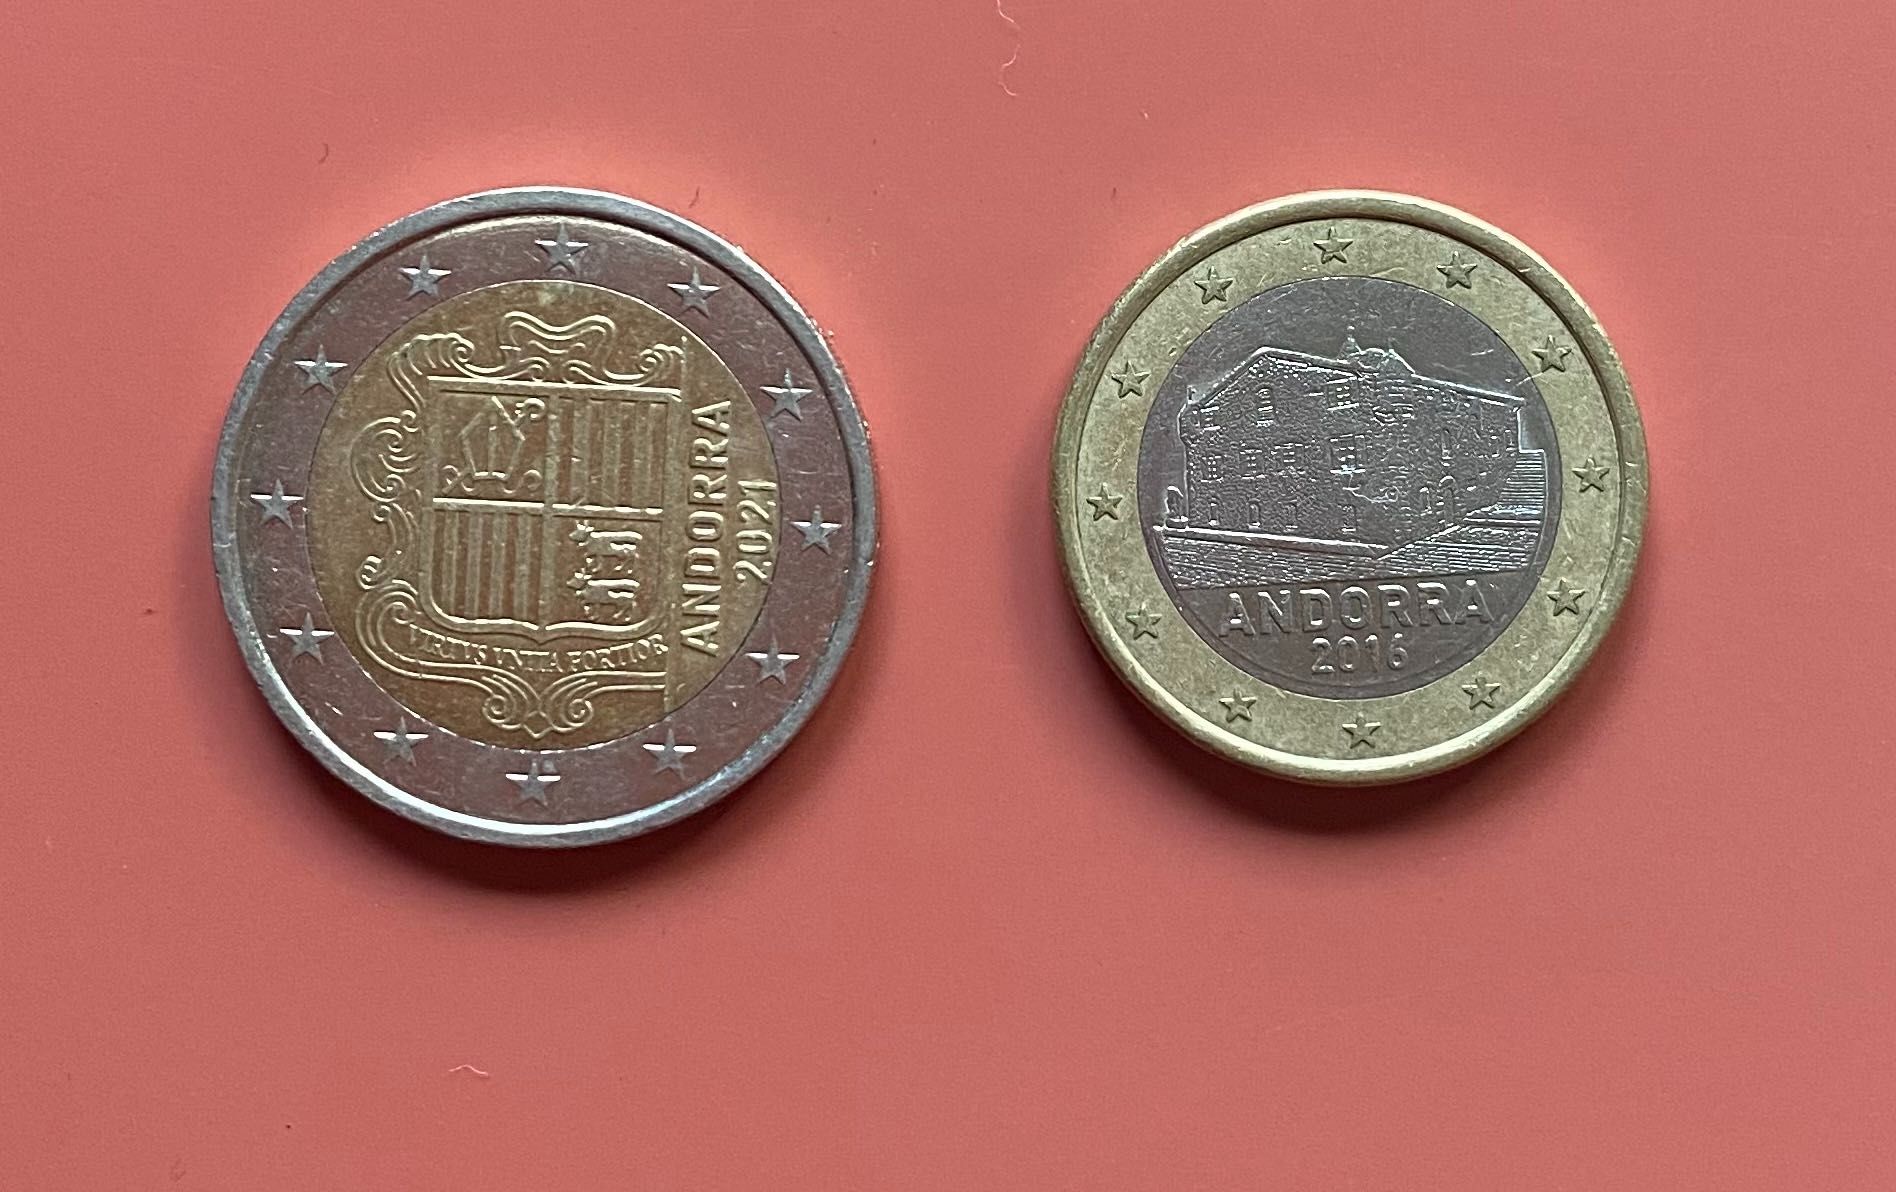 Coleção de Moedas - Andorra - 2€ / 1€ / 10 , 20 e 50 cêntimos